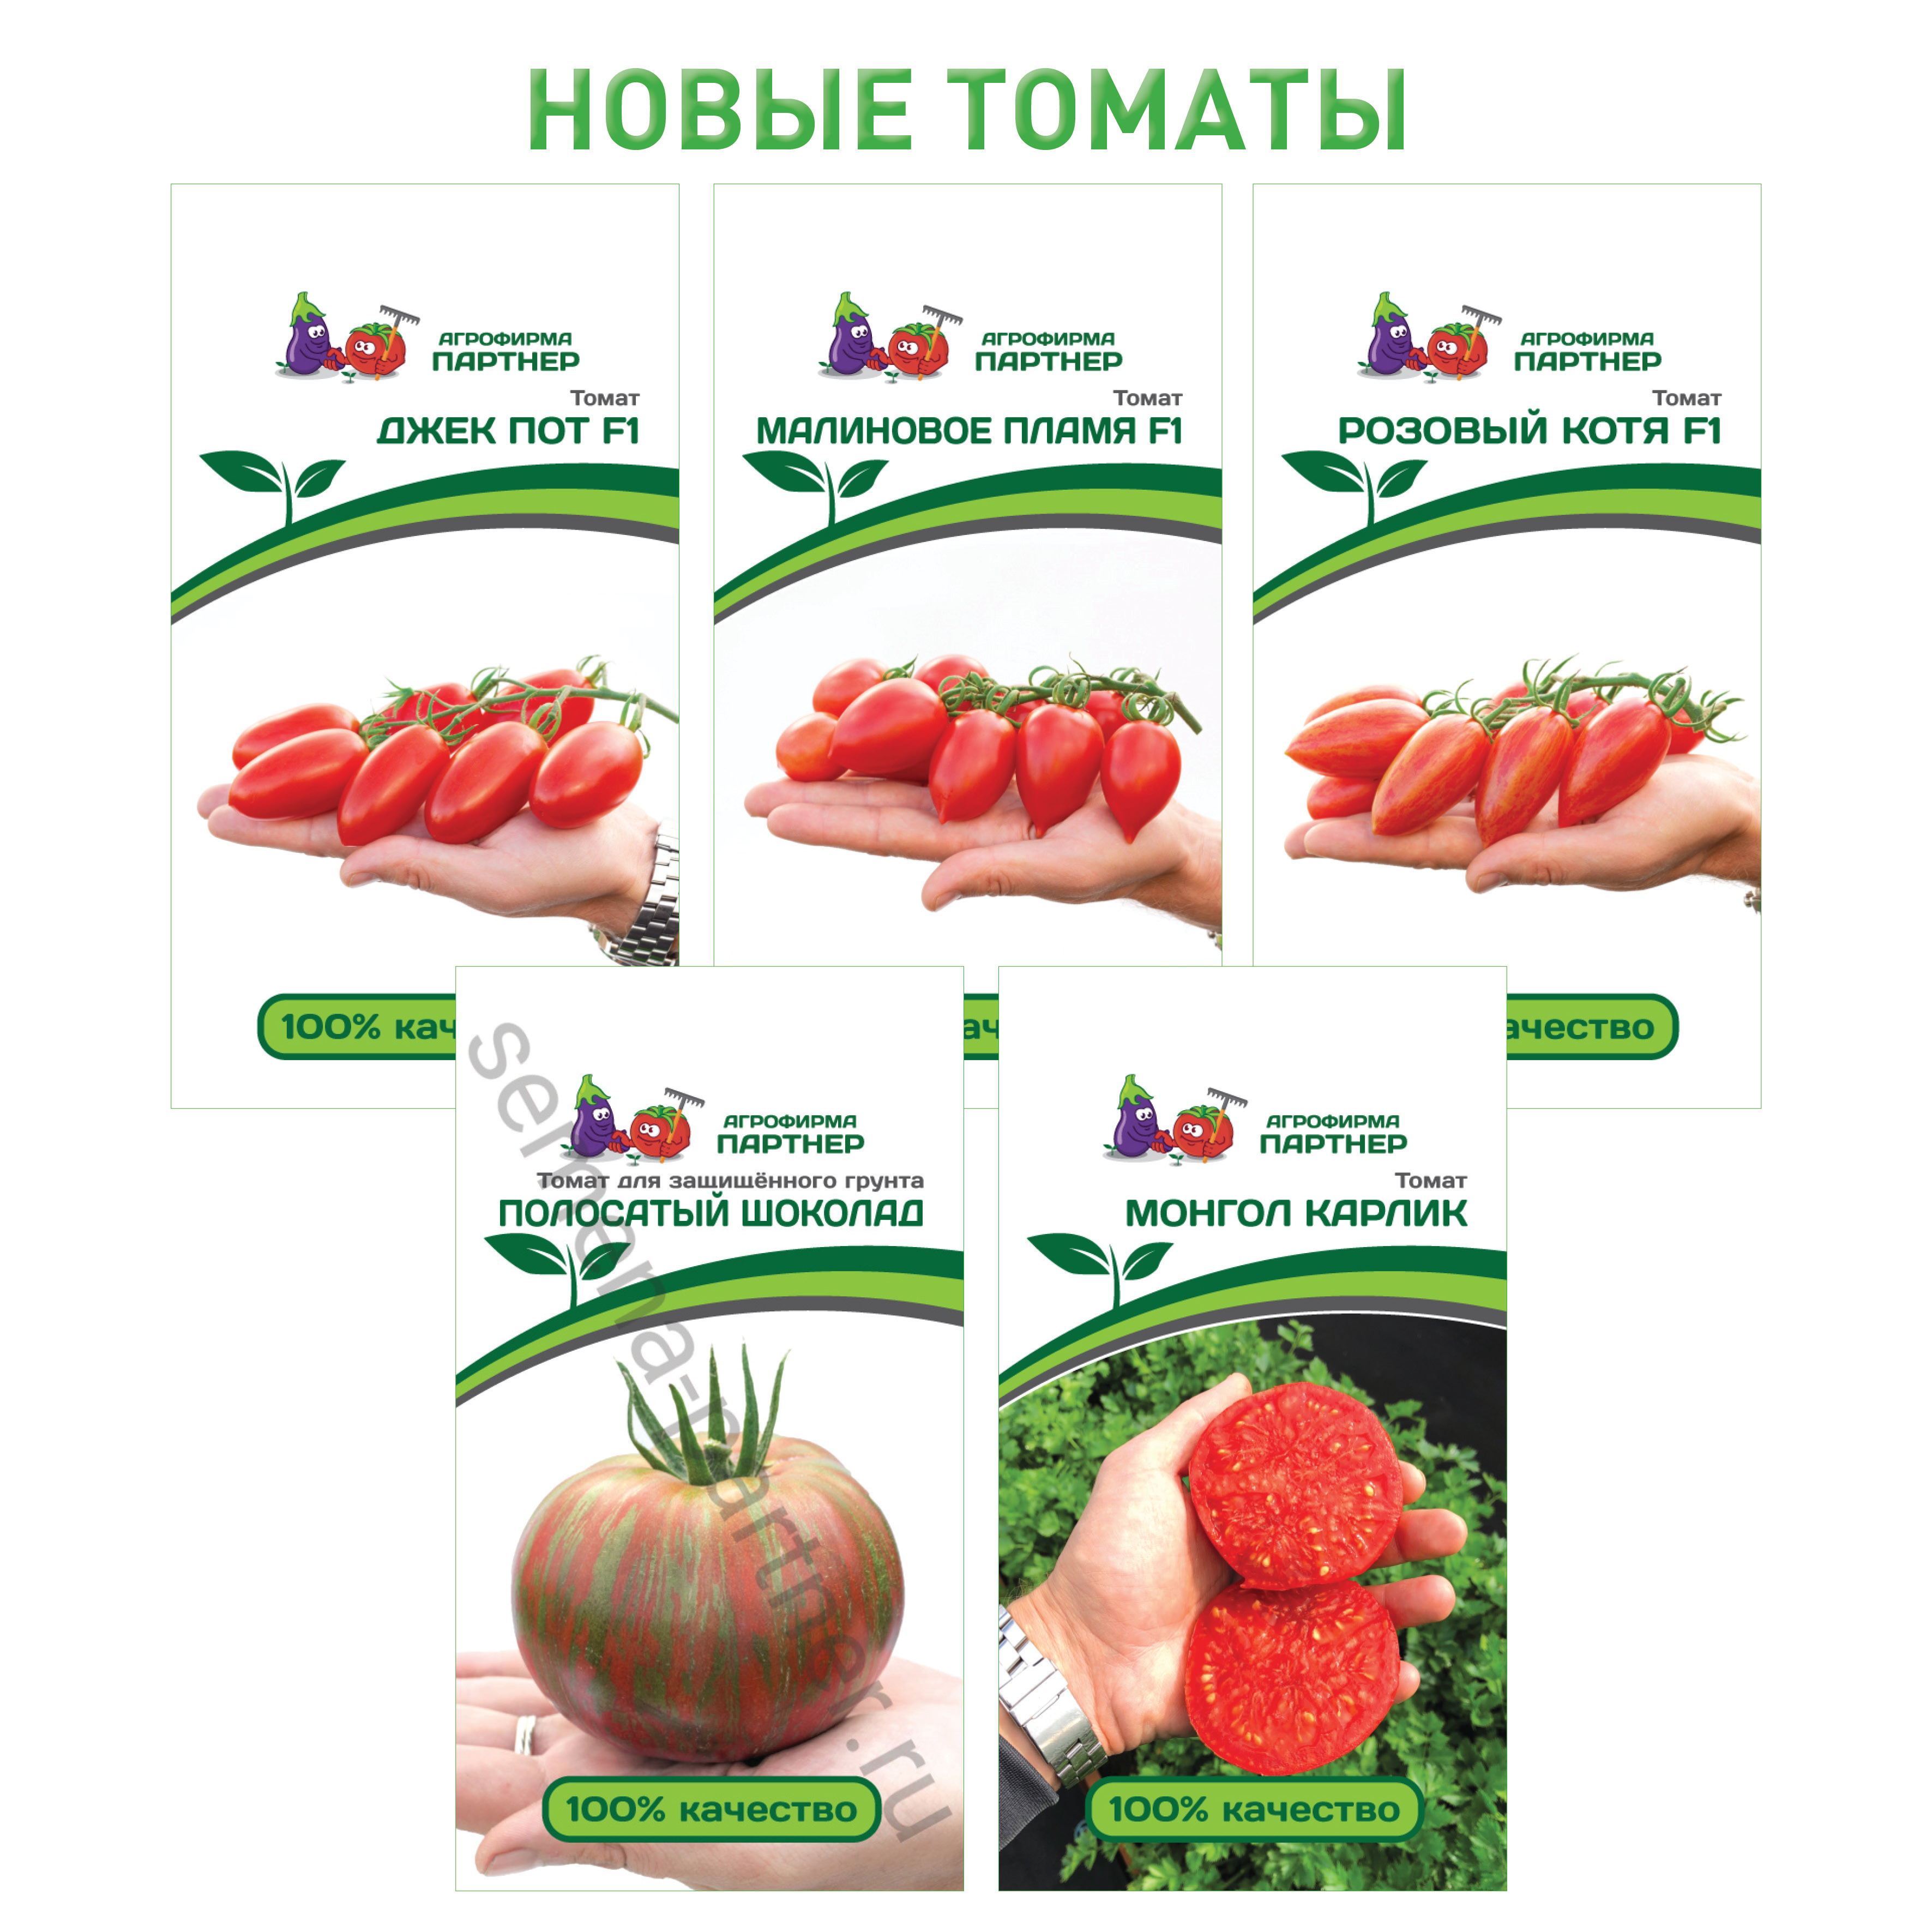 купить томат джекпот от агрофирмы партнер в интернет магазине